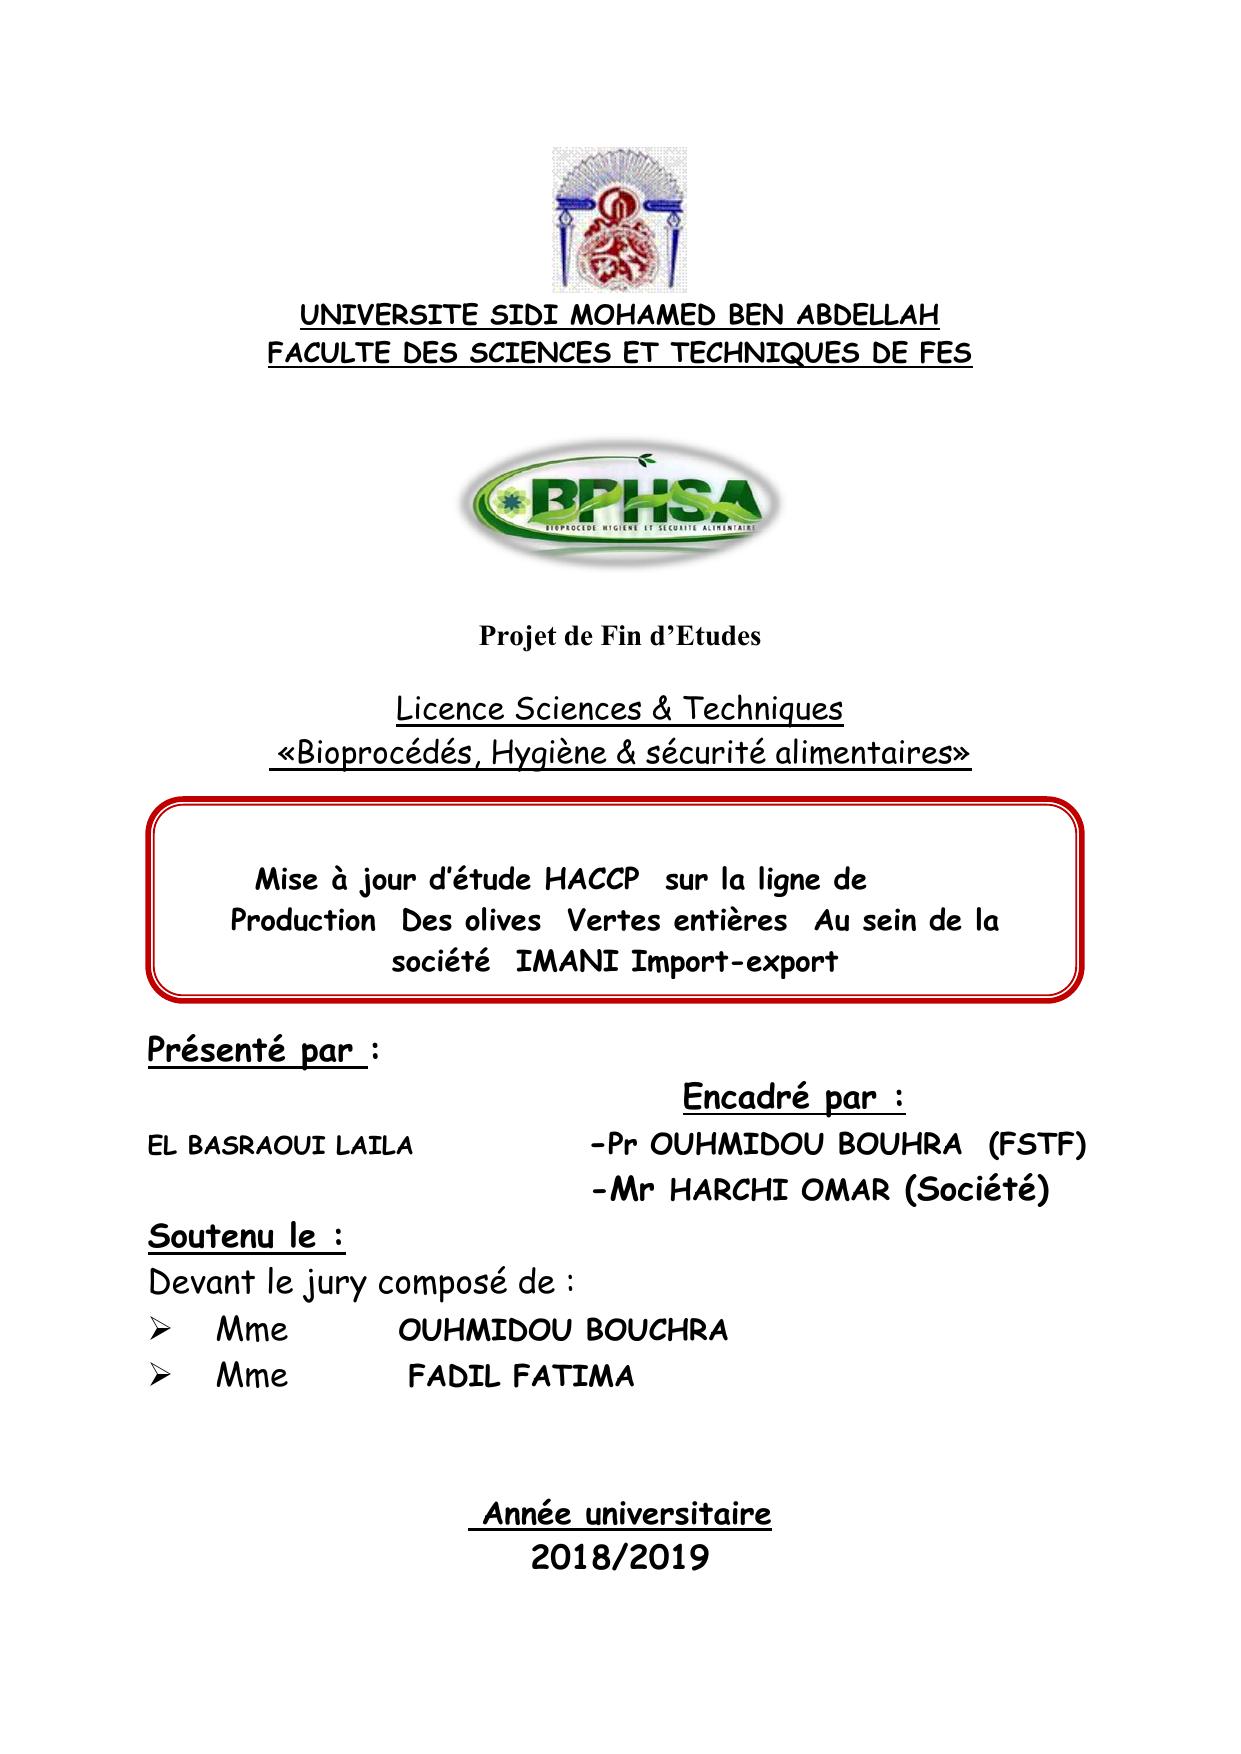 Mise à jour d’étude HACCP sur la ligne de Production Des olives Vertes entières Au sein de la société IMANI Import-export